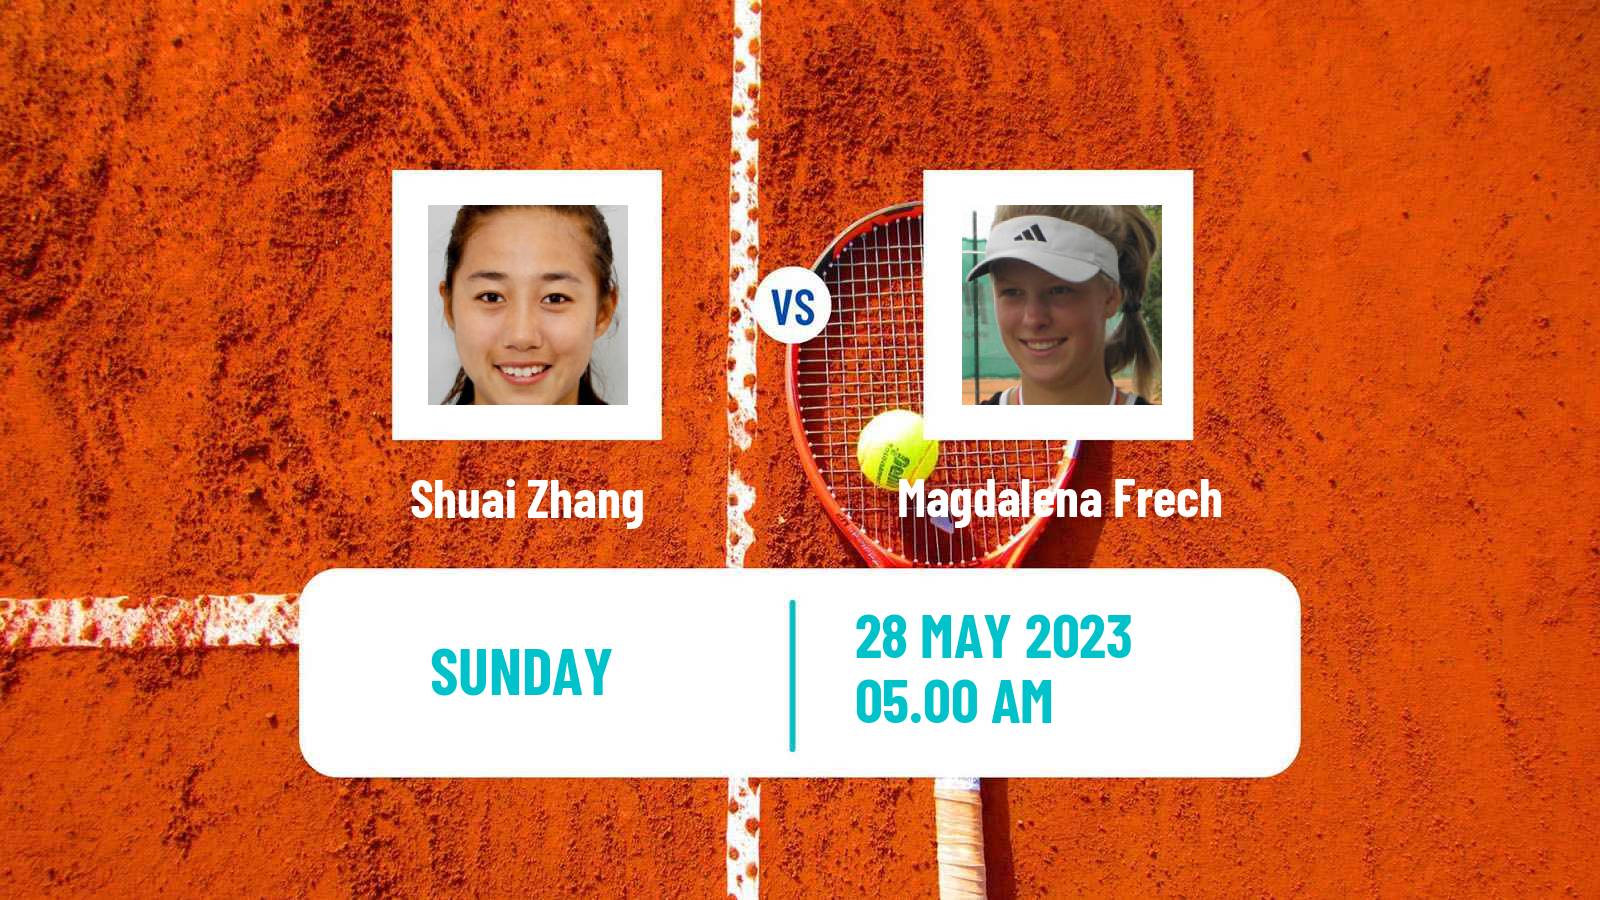 Tennis WTA Roland Garros Shuai Zhang - Magdalena Frech